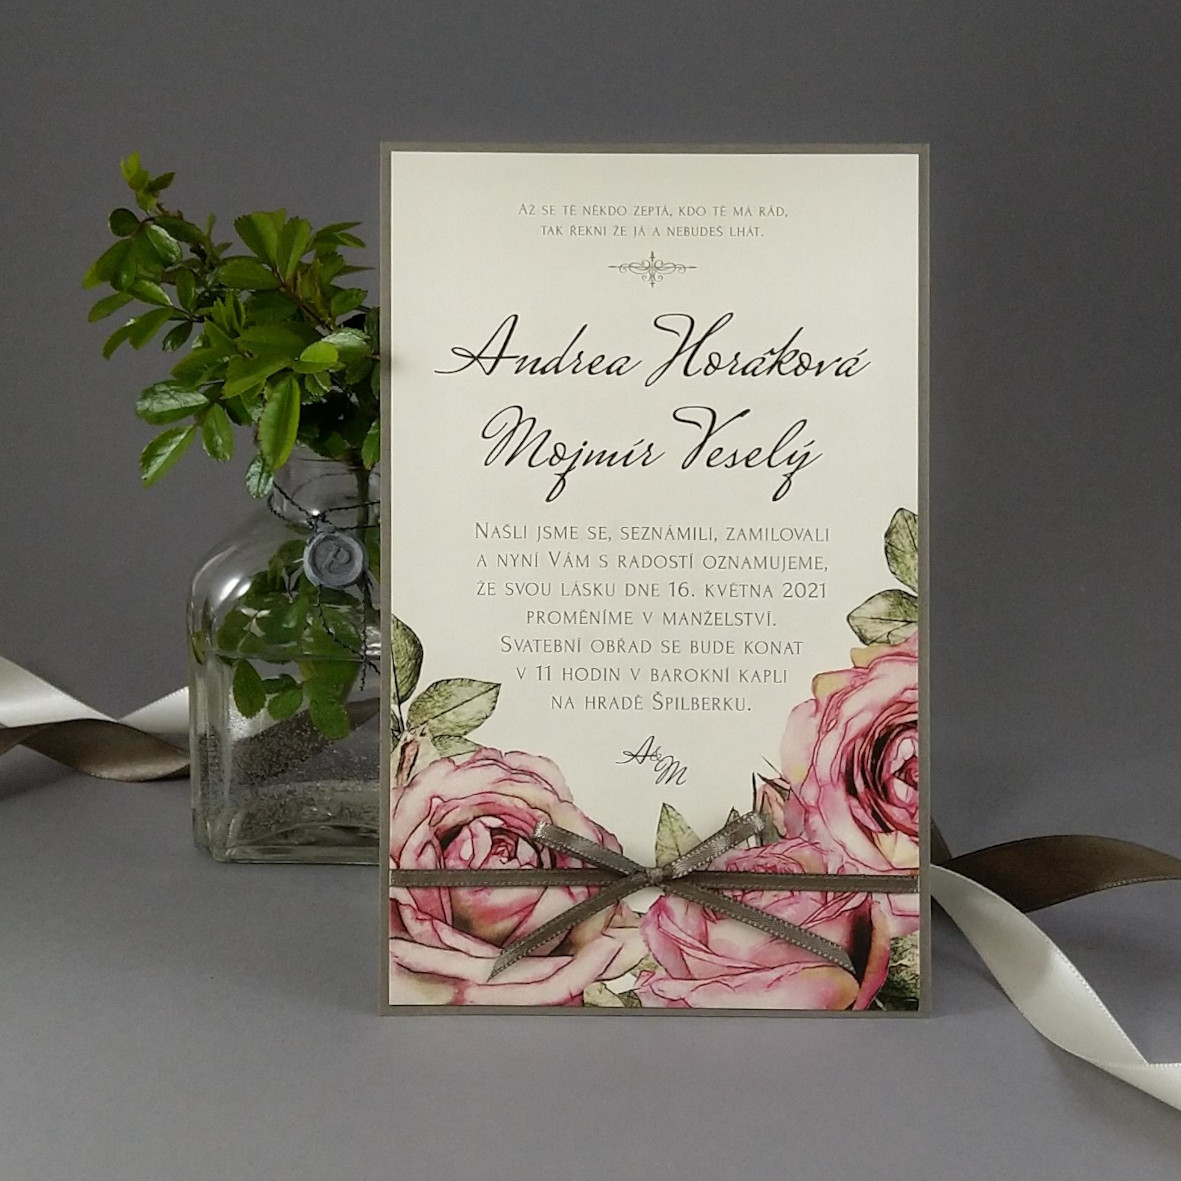 Svatební oznámení – kašírovaná karta s vintage růžemi a atlasovou stužkou, barva olivová, krémová a růžová